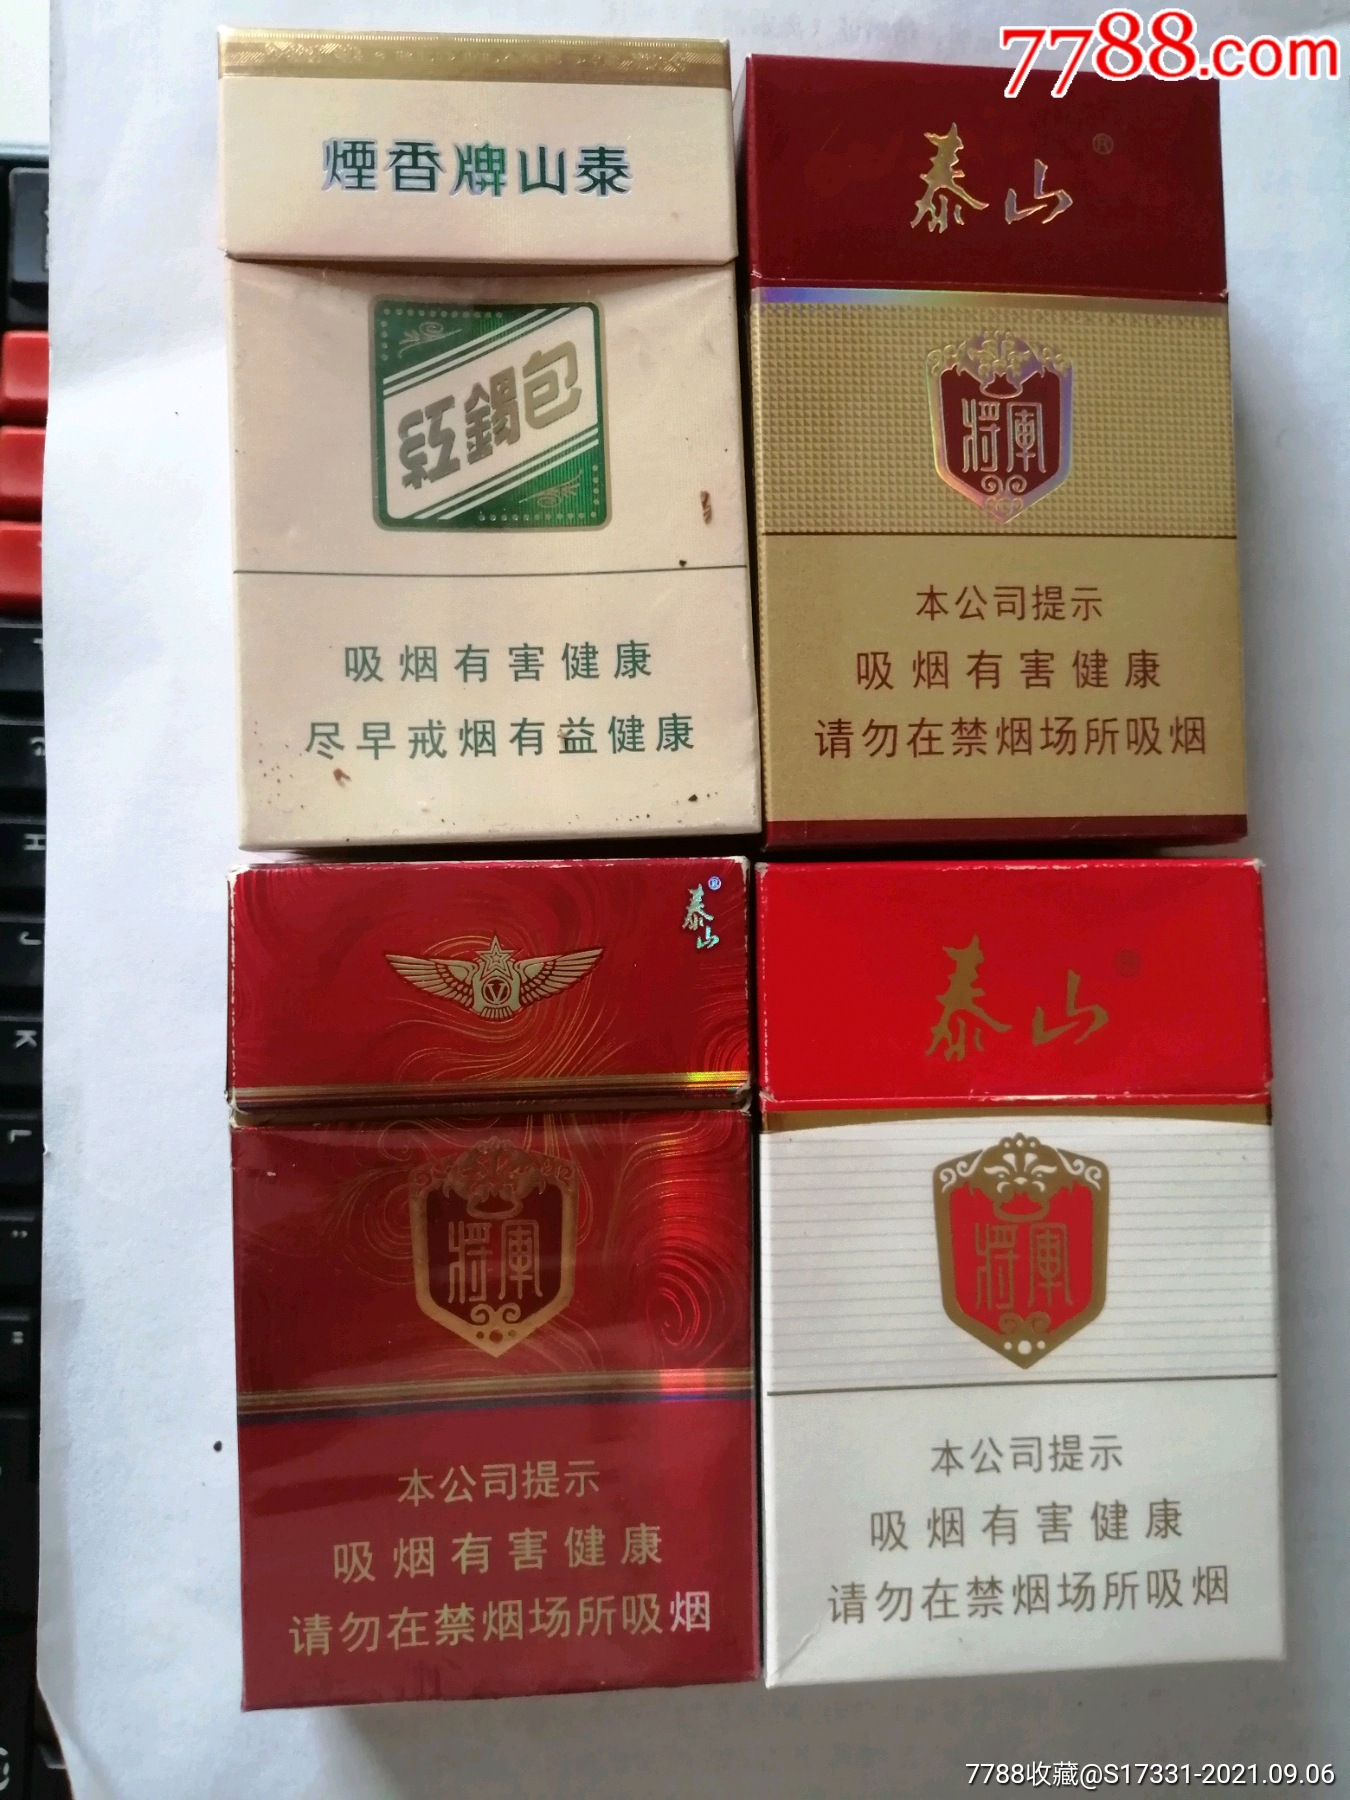 山东红锡包香烟图片图片